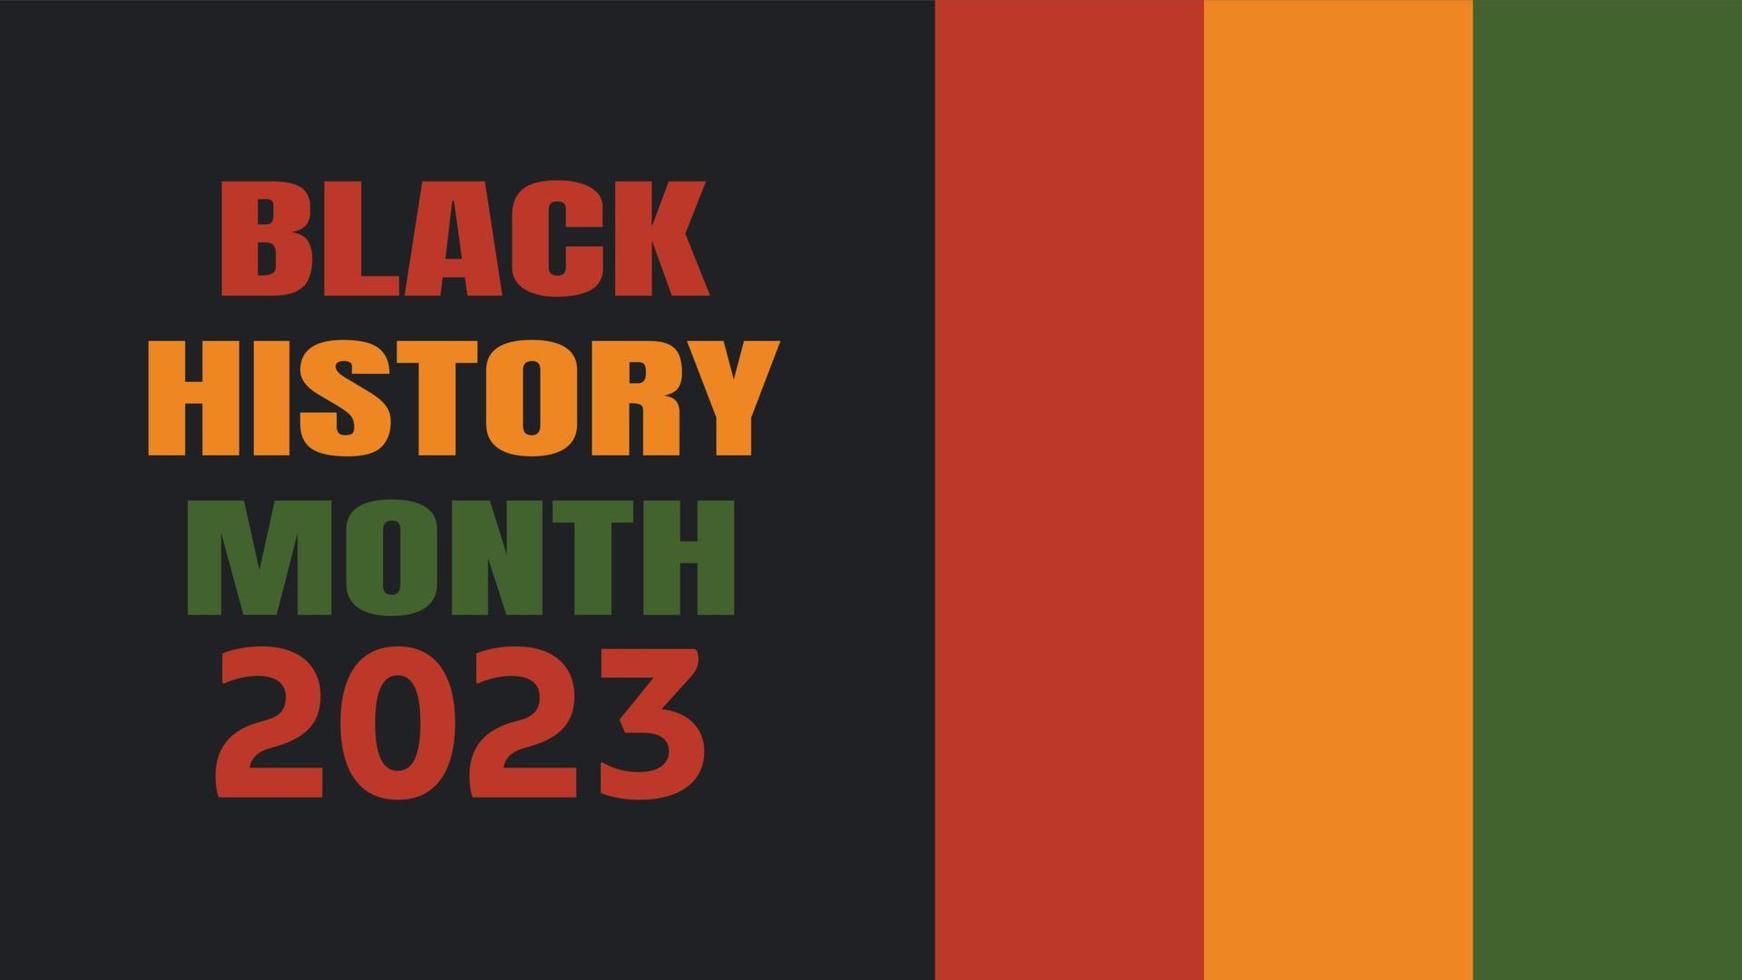 mês da história negra 2023 - celebração do patrimônio afro-americano nos eua. ilustração vetorial com texto, listras de bandeira em cores tradicionais africanas - verde, vermelho, amarelo sobre fundo preto vetor